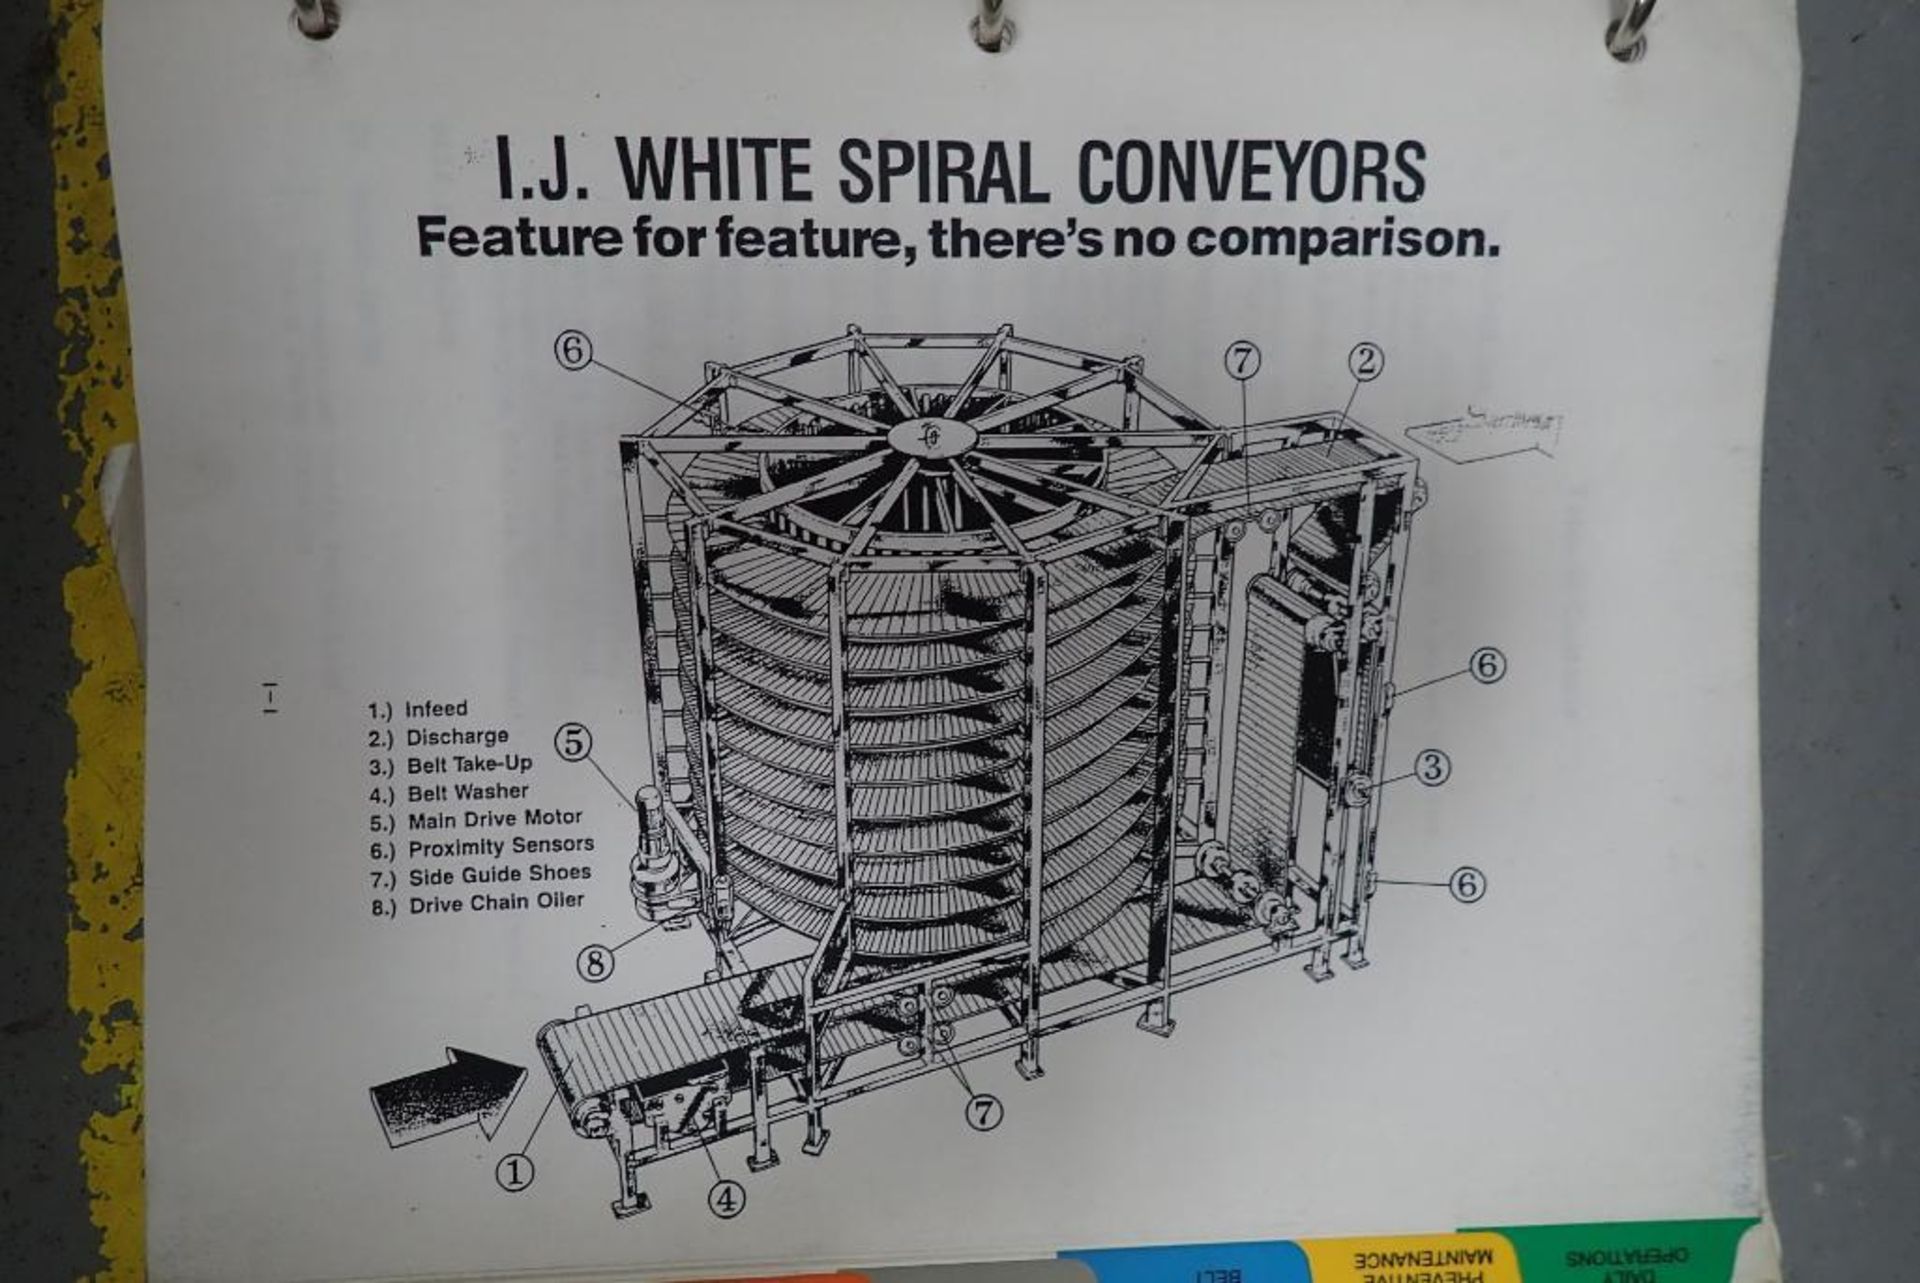 IJ White spiral freezer - Image 39 of 40